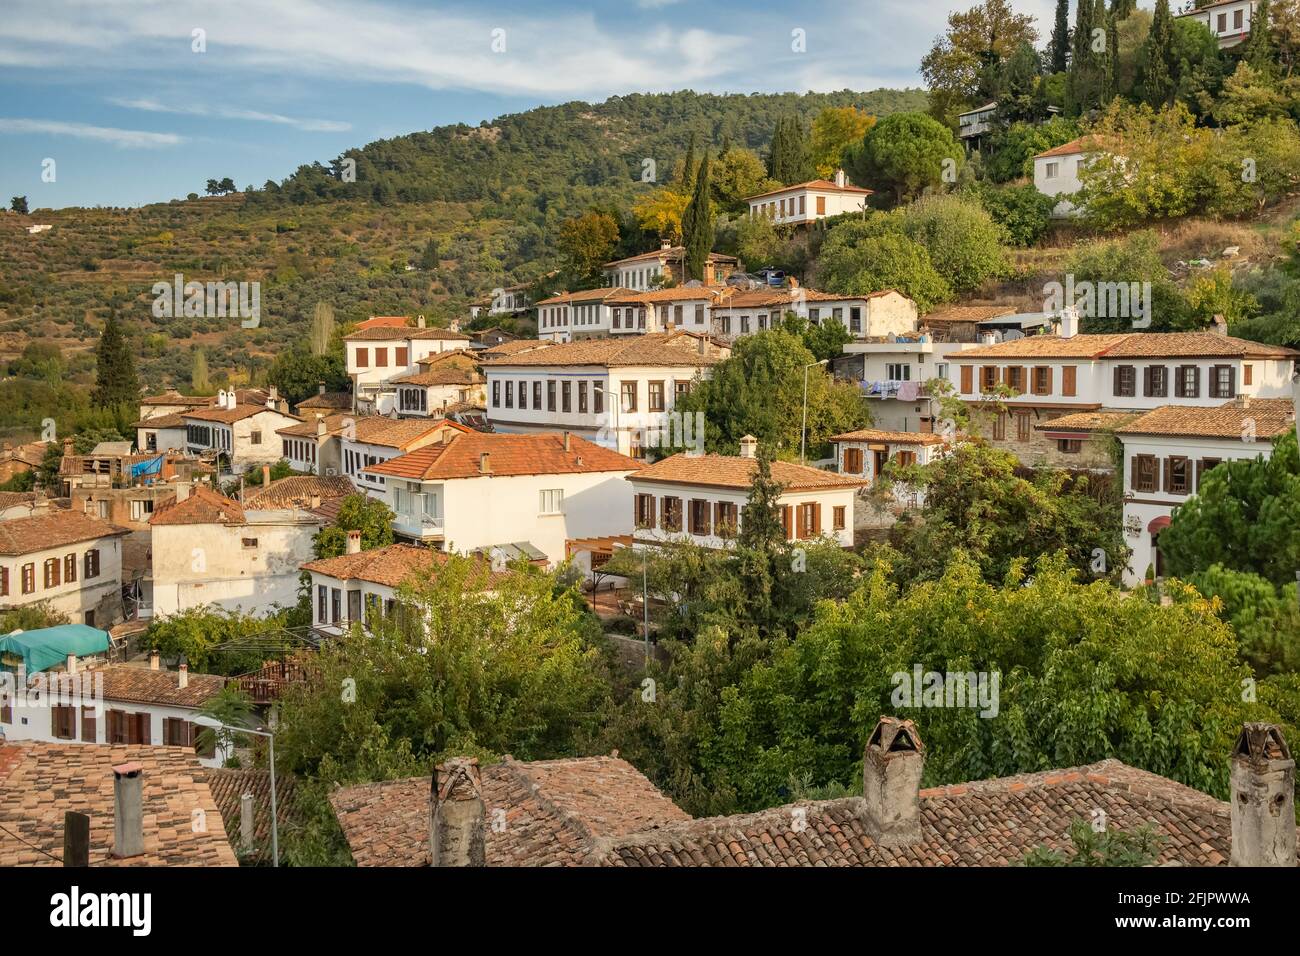 Alte Häuser im historischen Dorf Sirince in der Region Izmir, Türkei Stockfoto